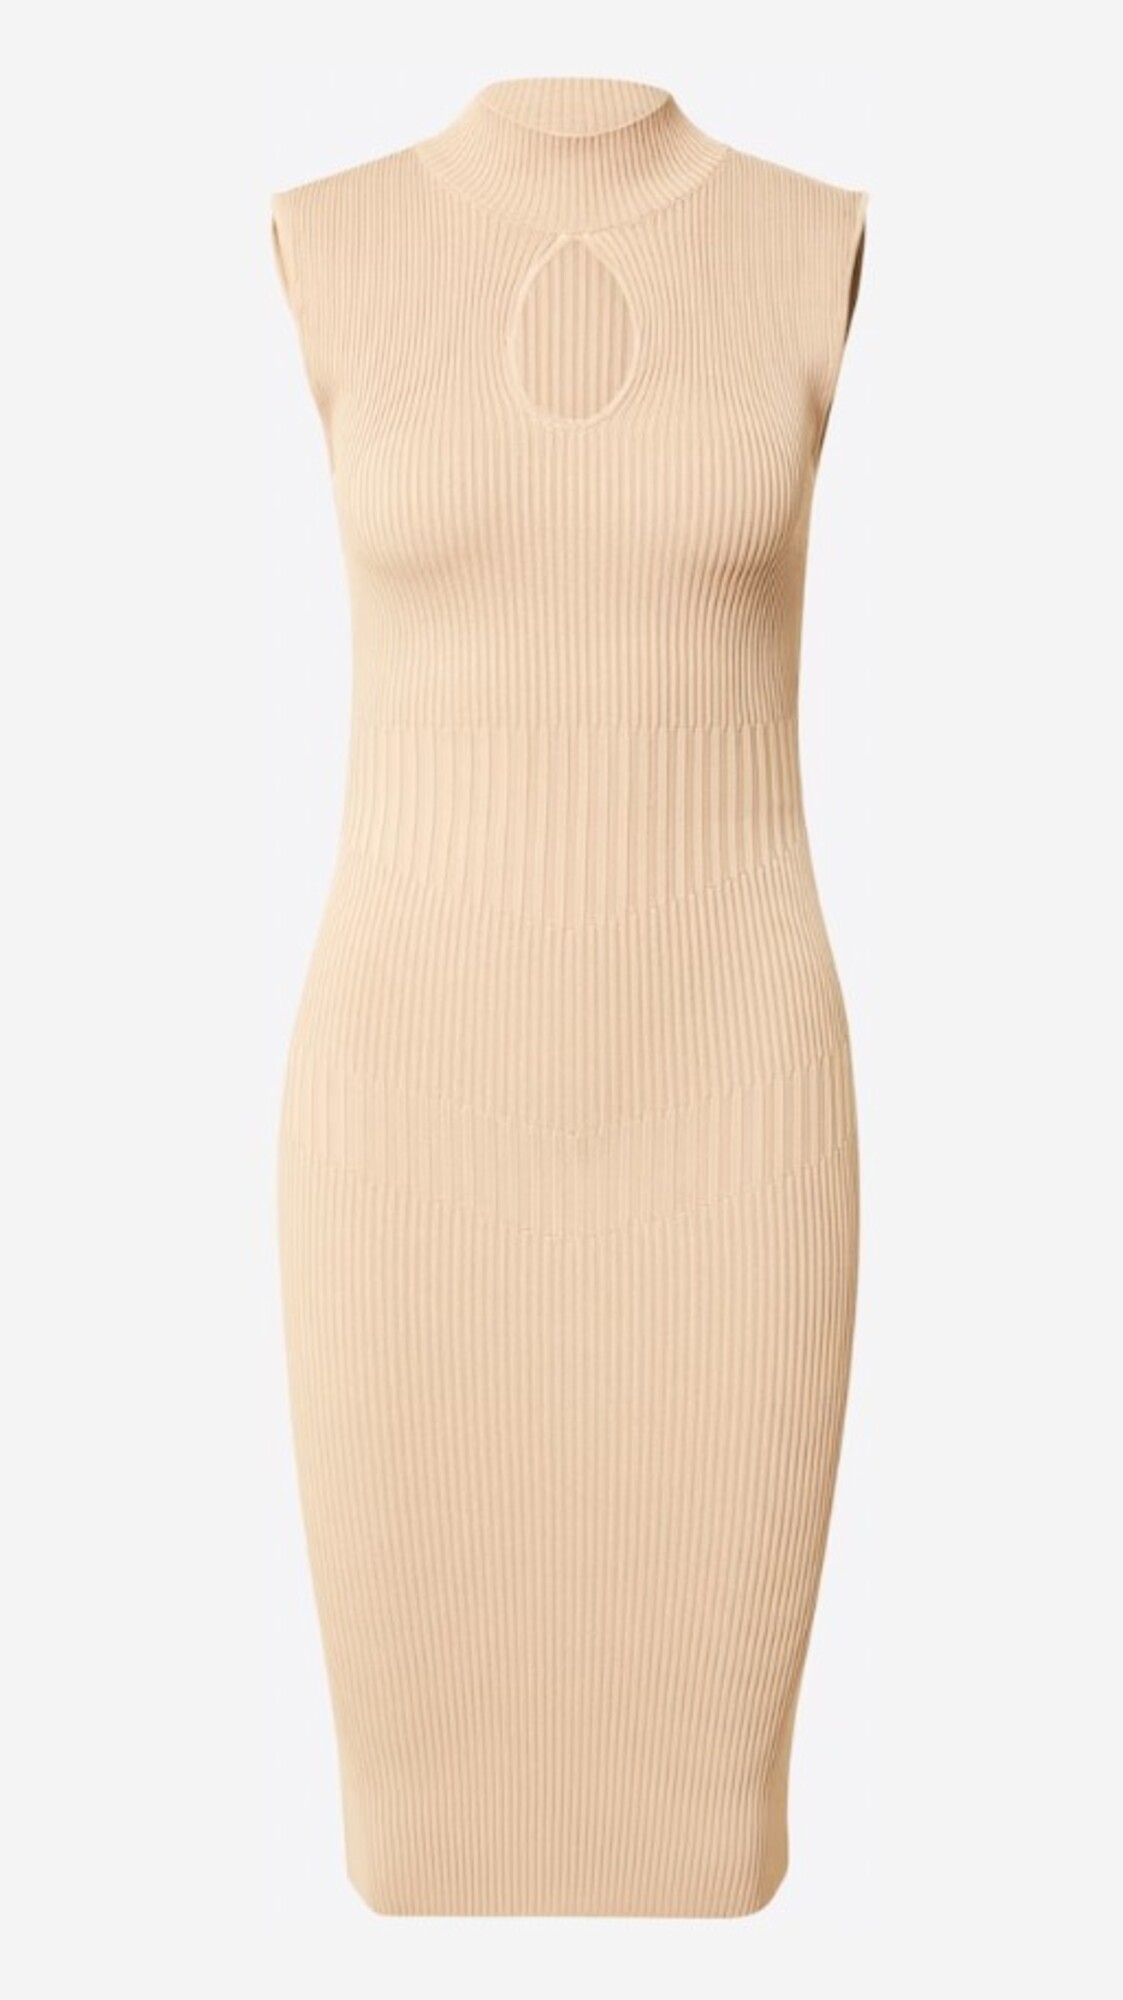 Sexi pletené šaty Guess, ktorý môžeš mať za 80,67 eur vyzerajú skvele k vysokým čižmám a huňatému kabátu. Odložiť si ich môžeš aj na teplejšie mesiace.